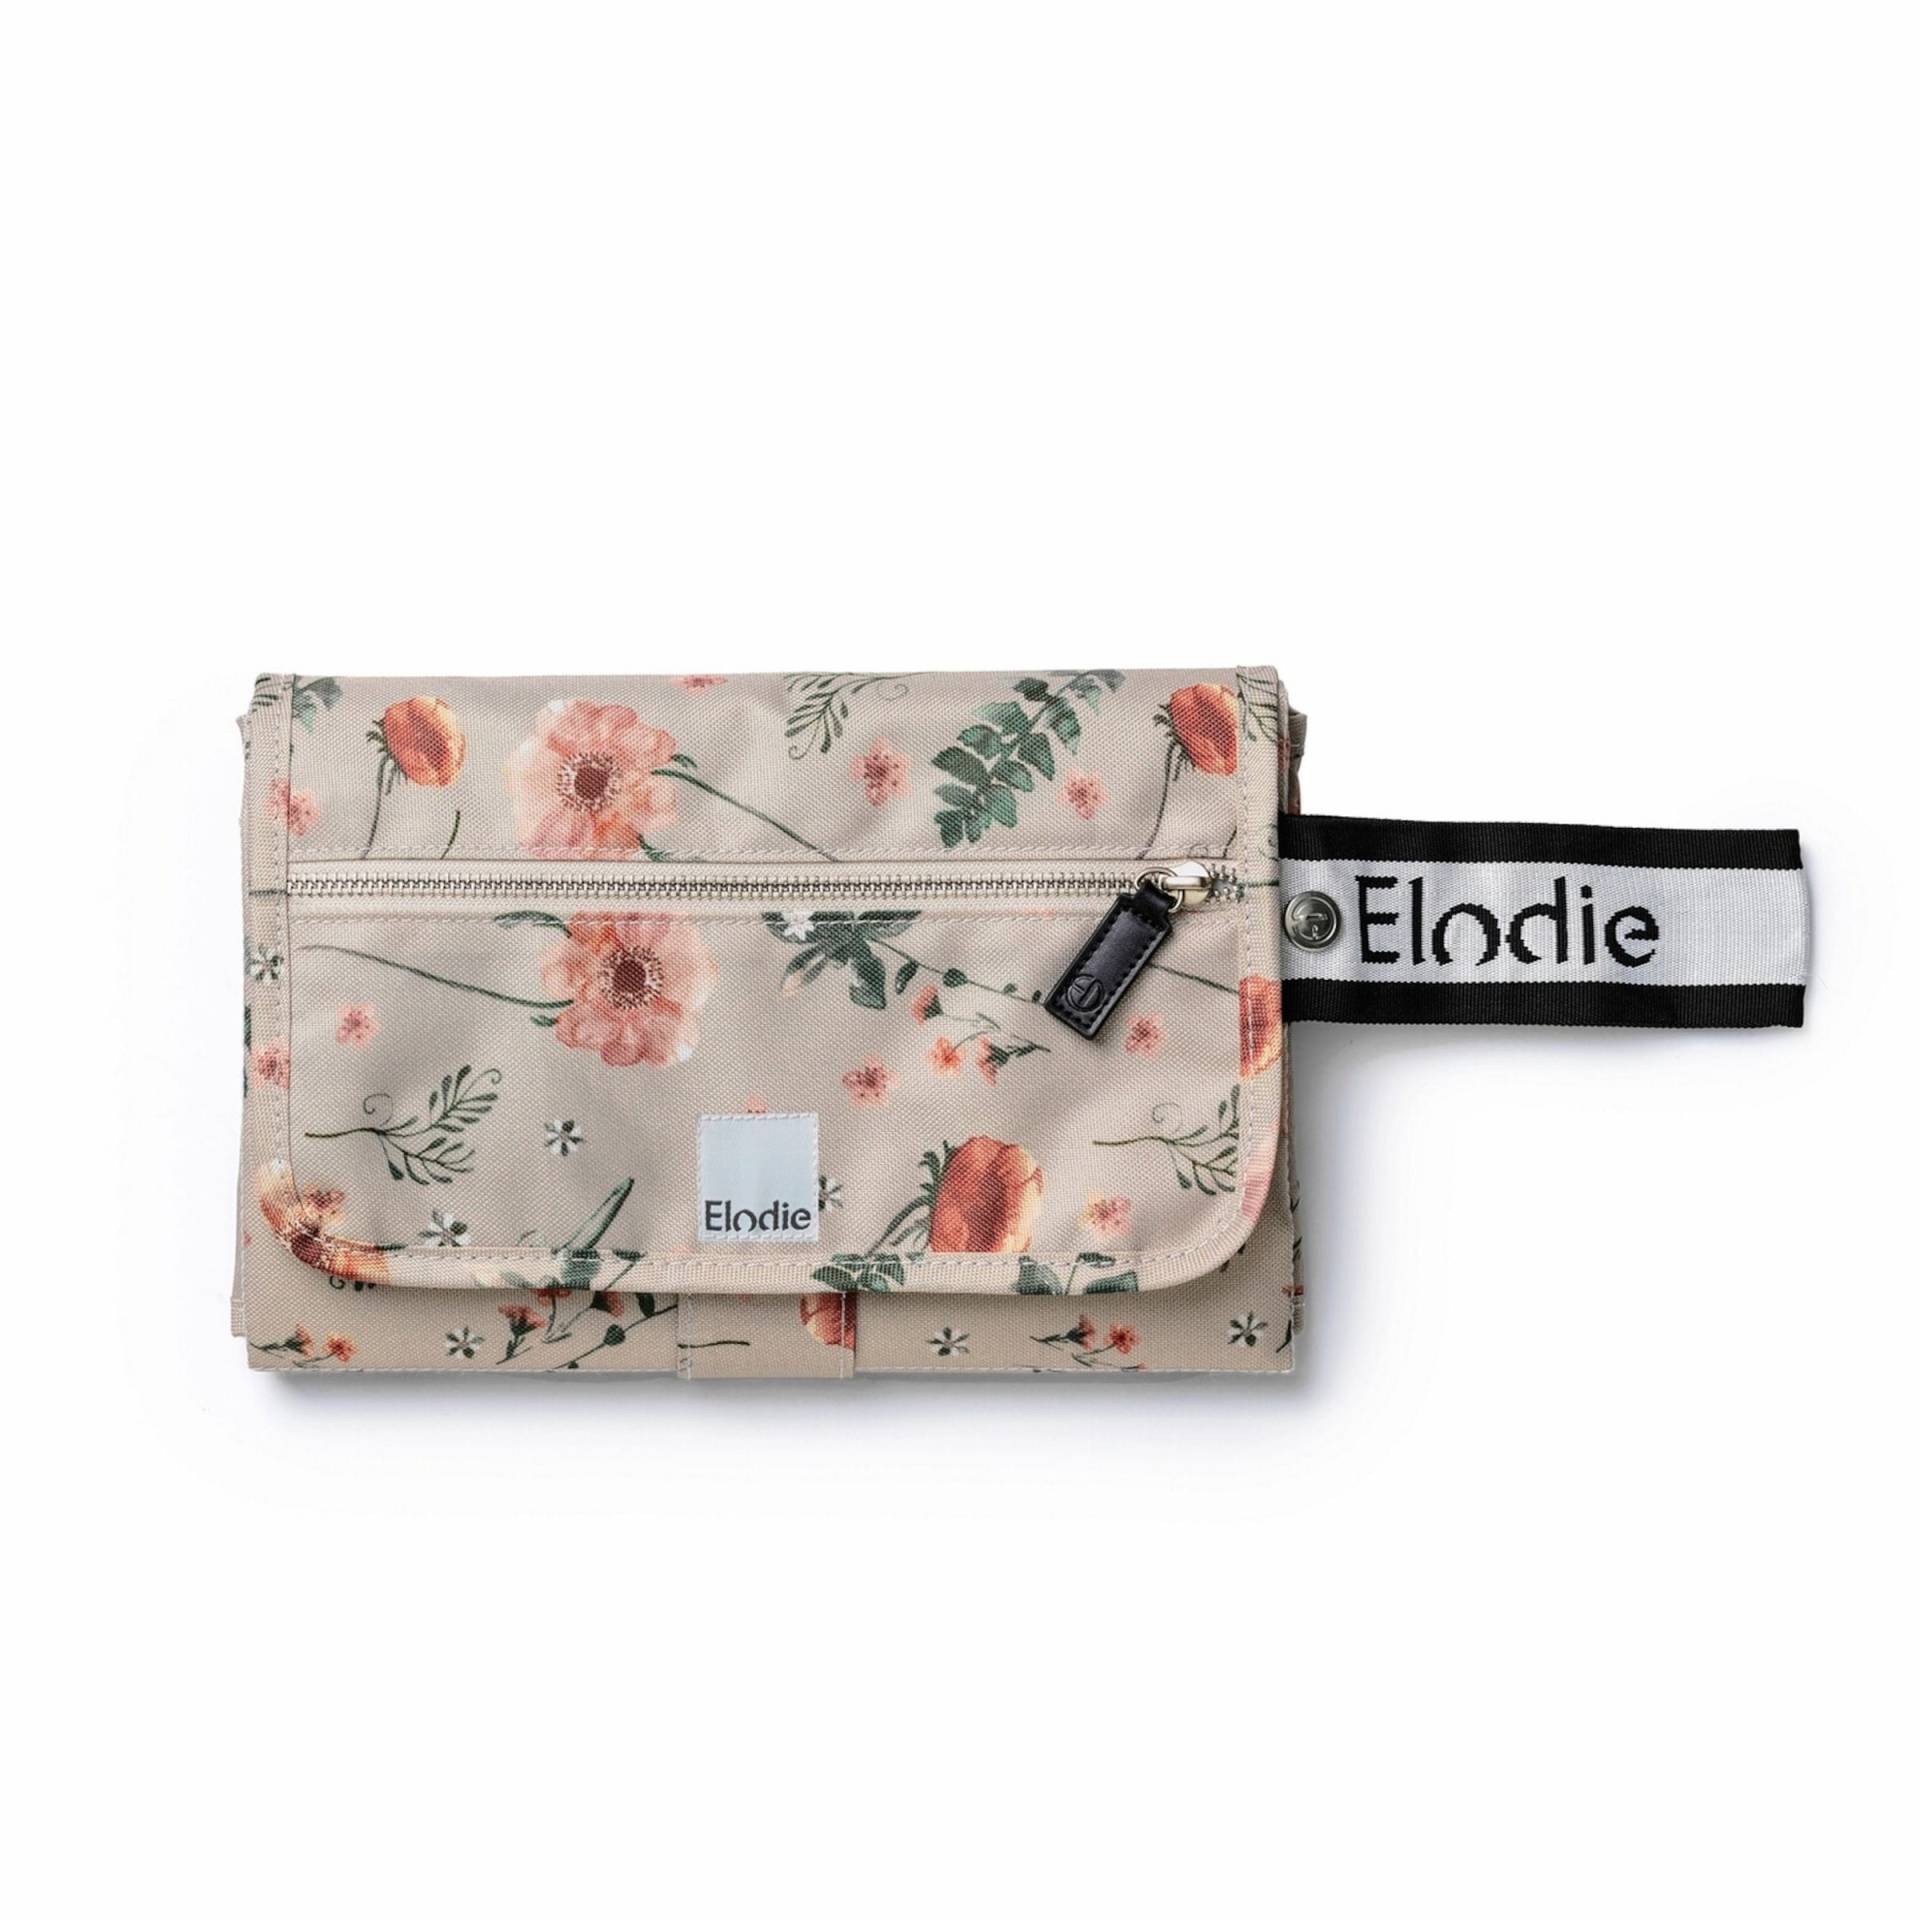 Elodie Tragbares Wickelpolster Wickelauflage - Meadow Blossom von Elodie